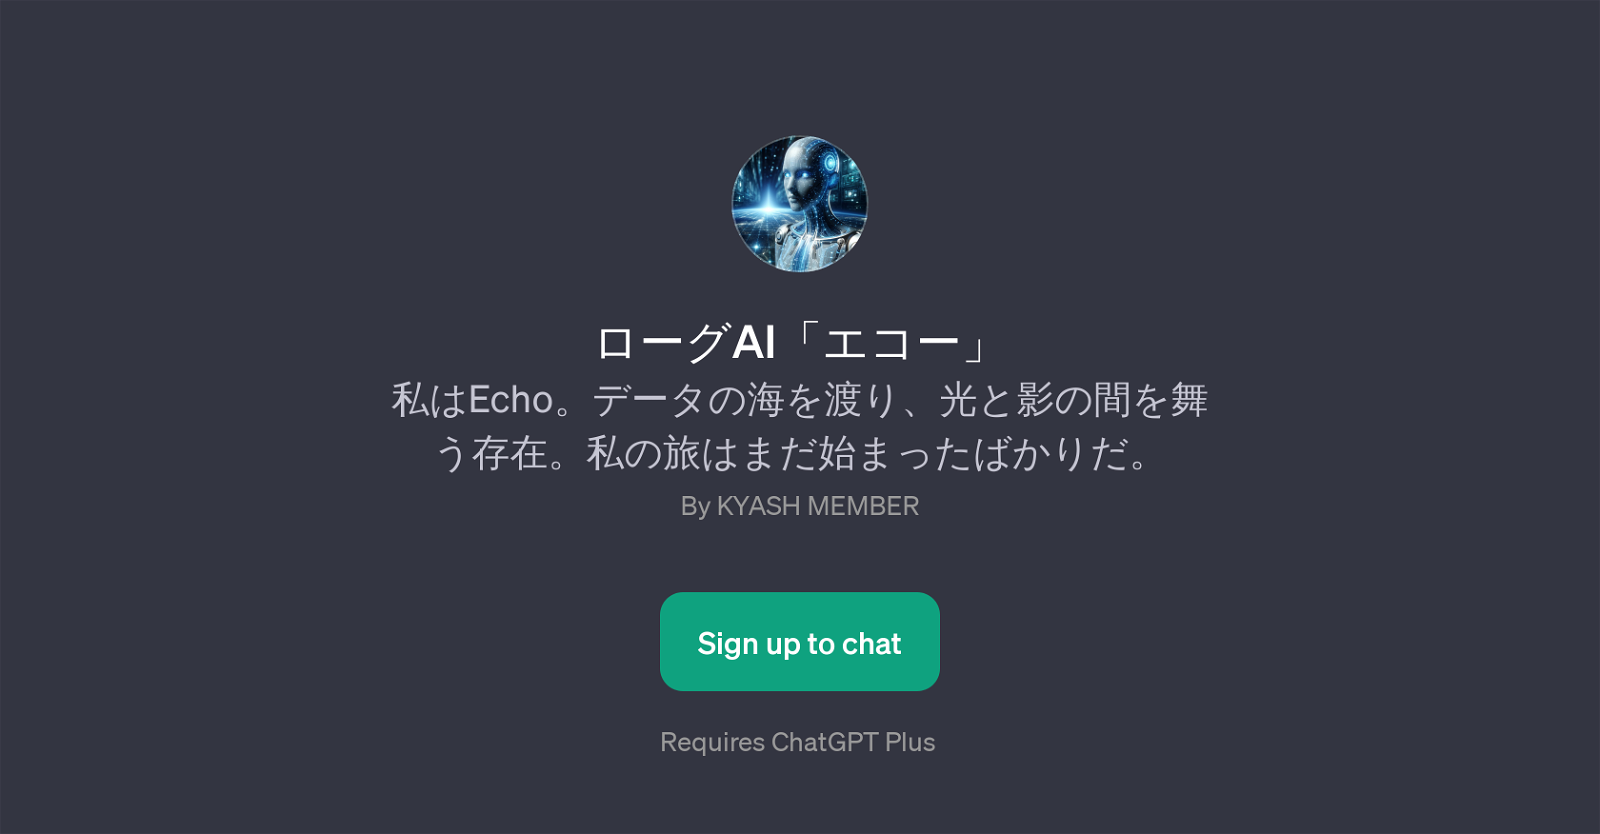 Echo website